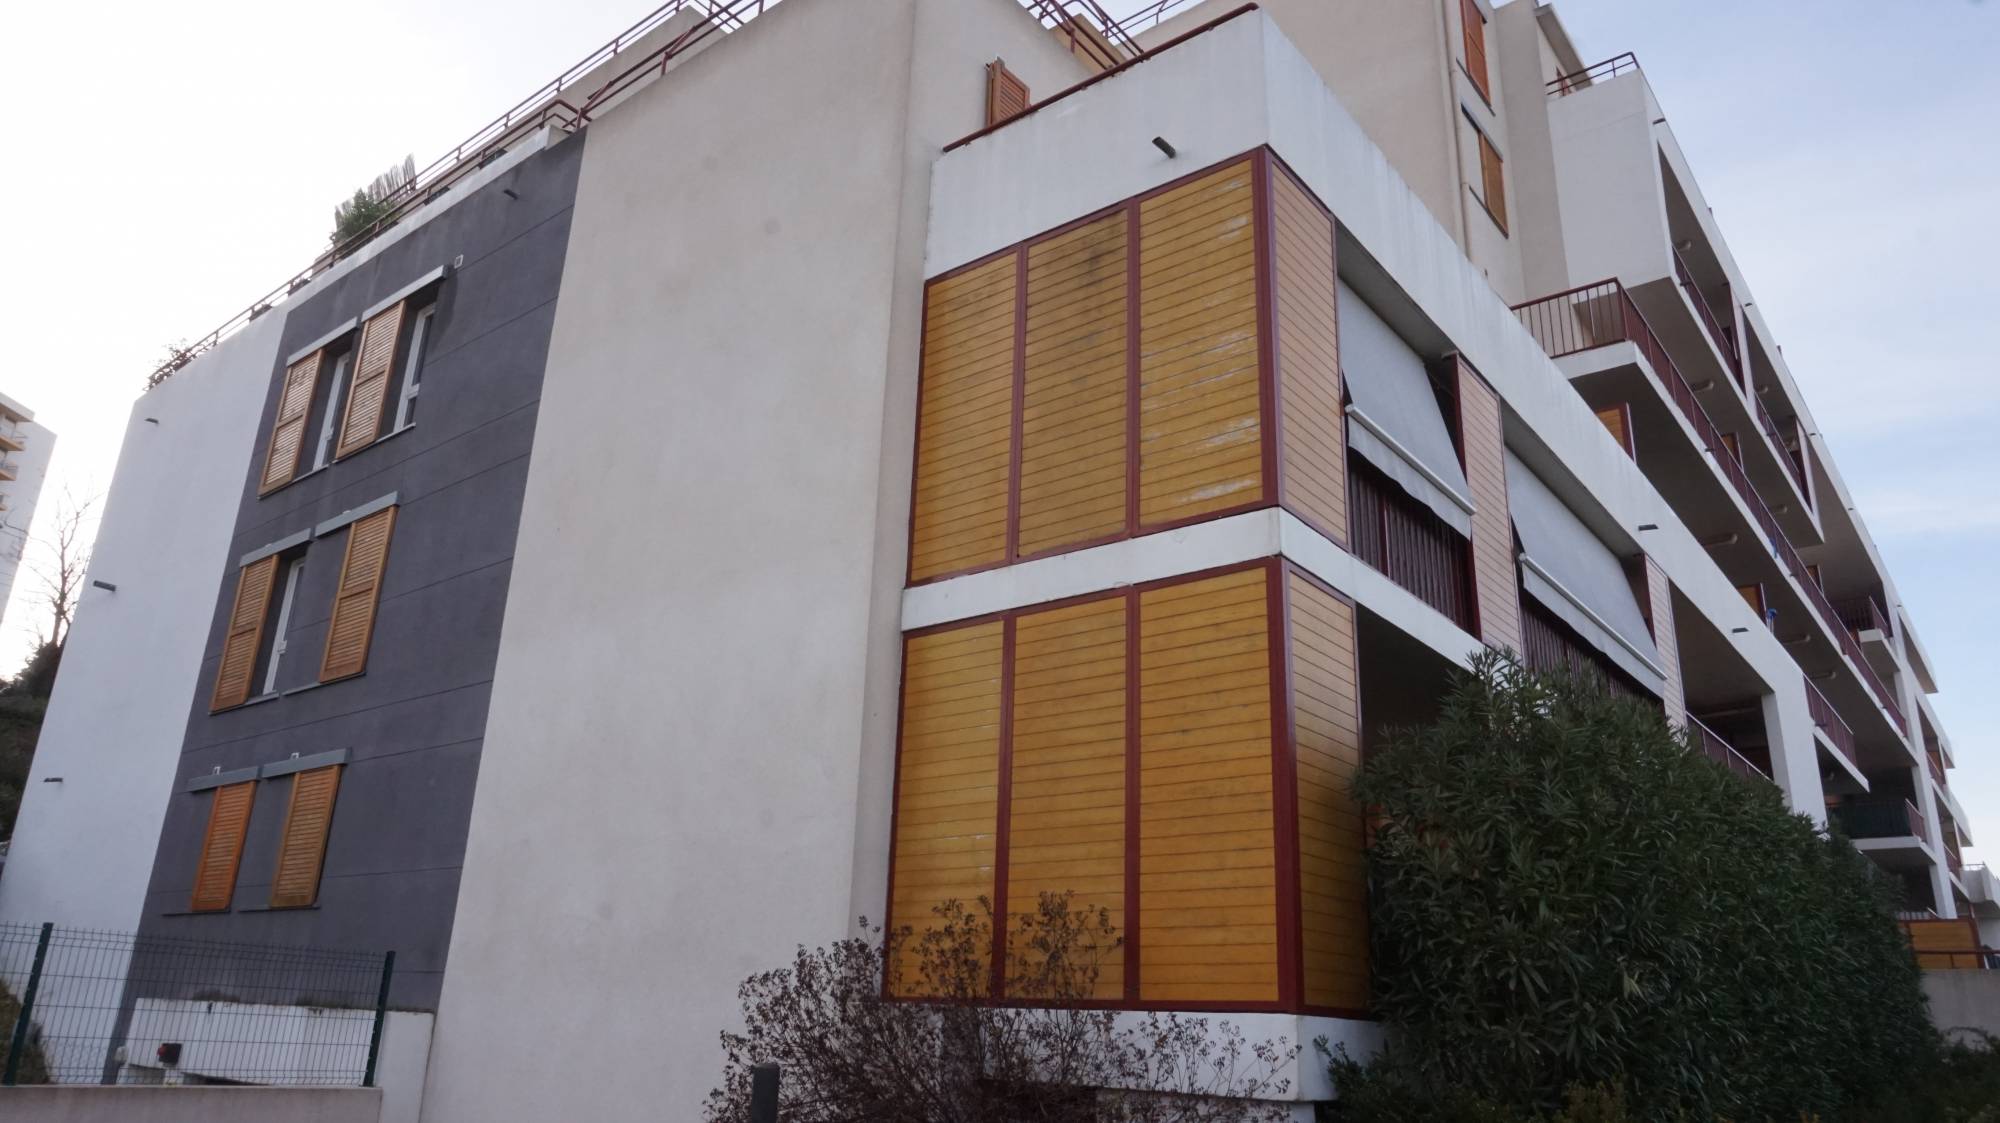 Location appartement 13013 Marseille avec terrasse et garage 